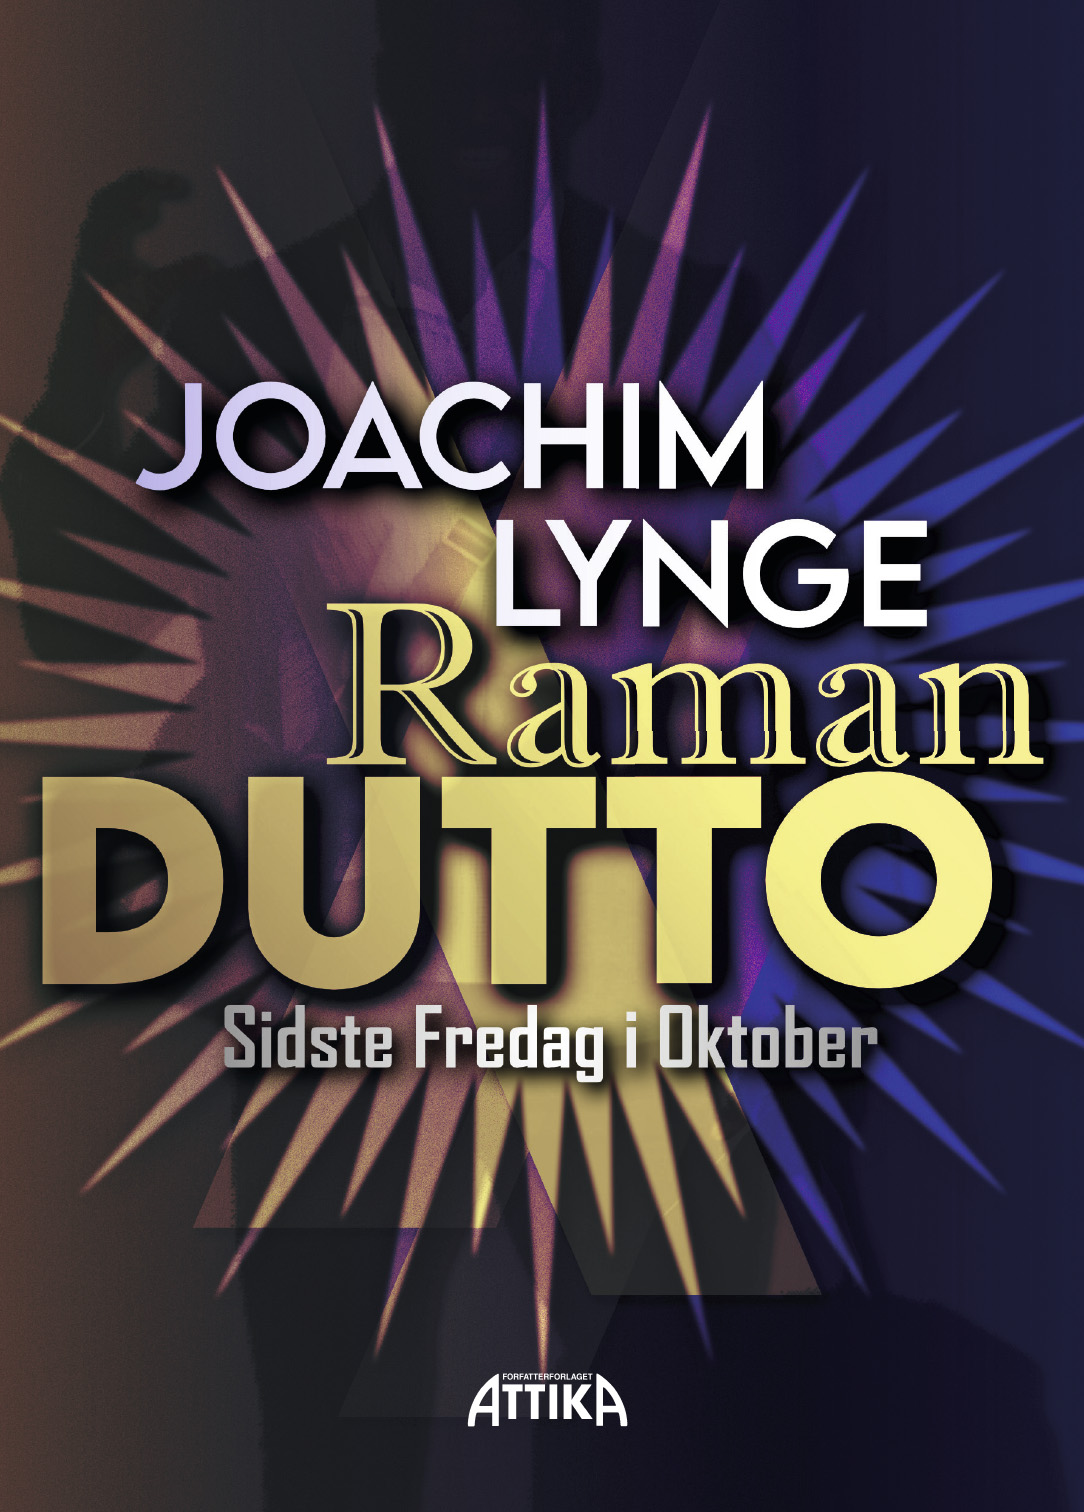 Joachim Lynge: RamanDutto